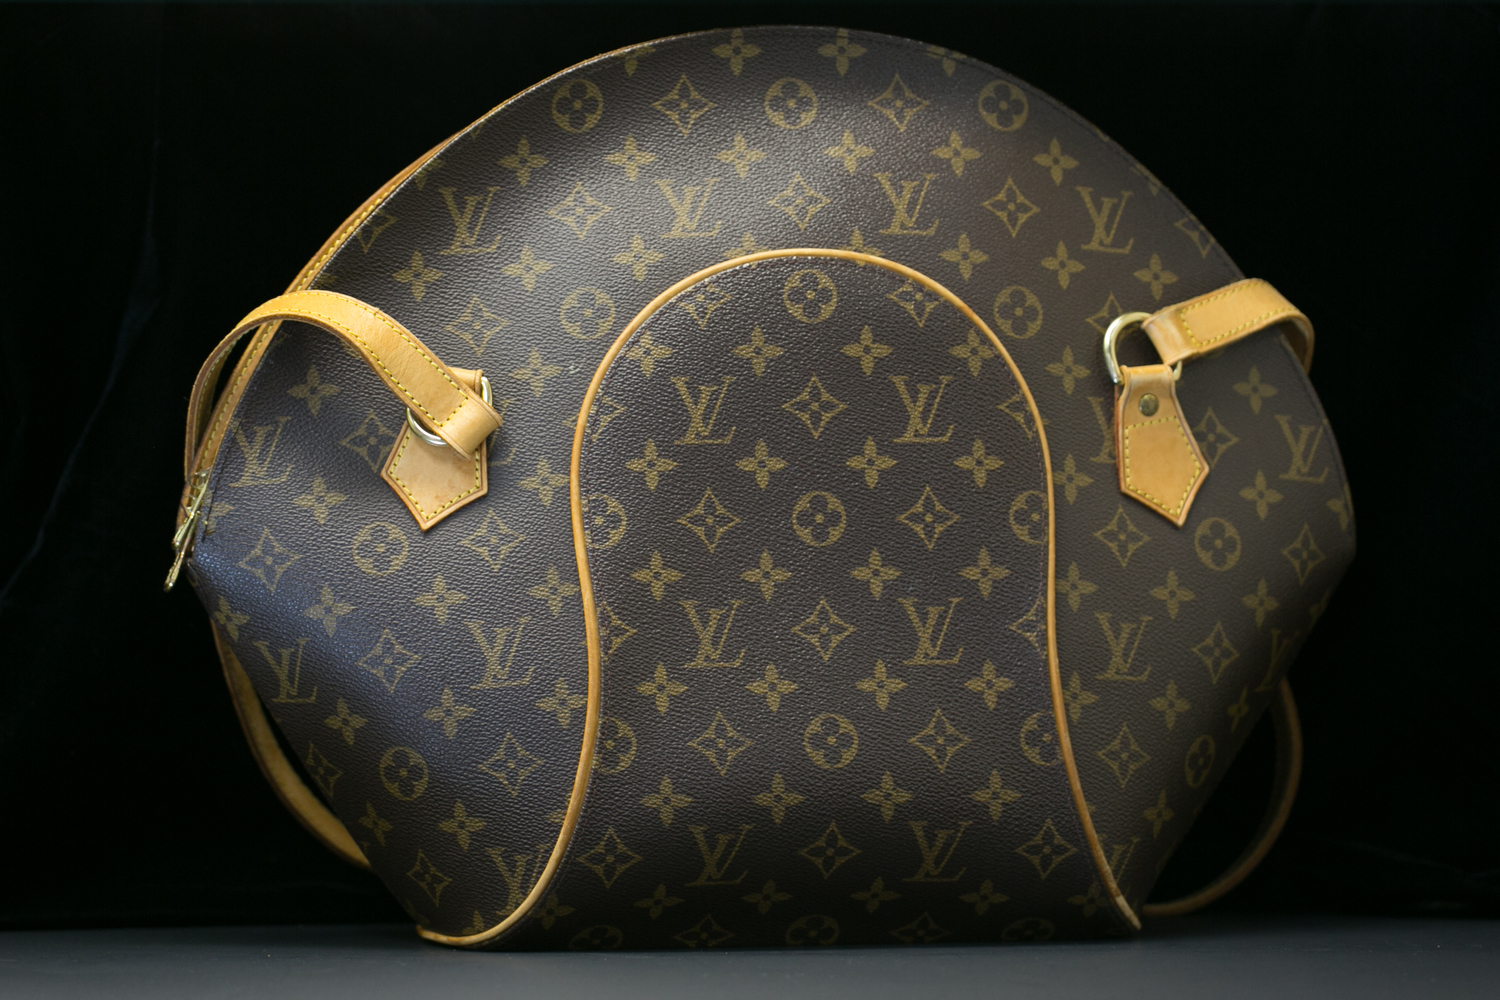 Louis Vuitton, Bags, Louis Vuitton Expandable Suitcase